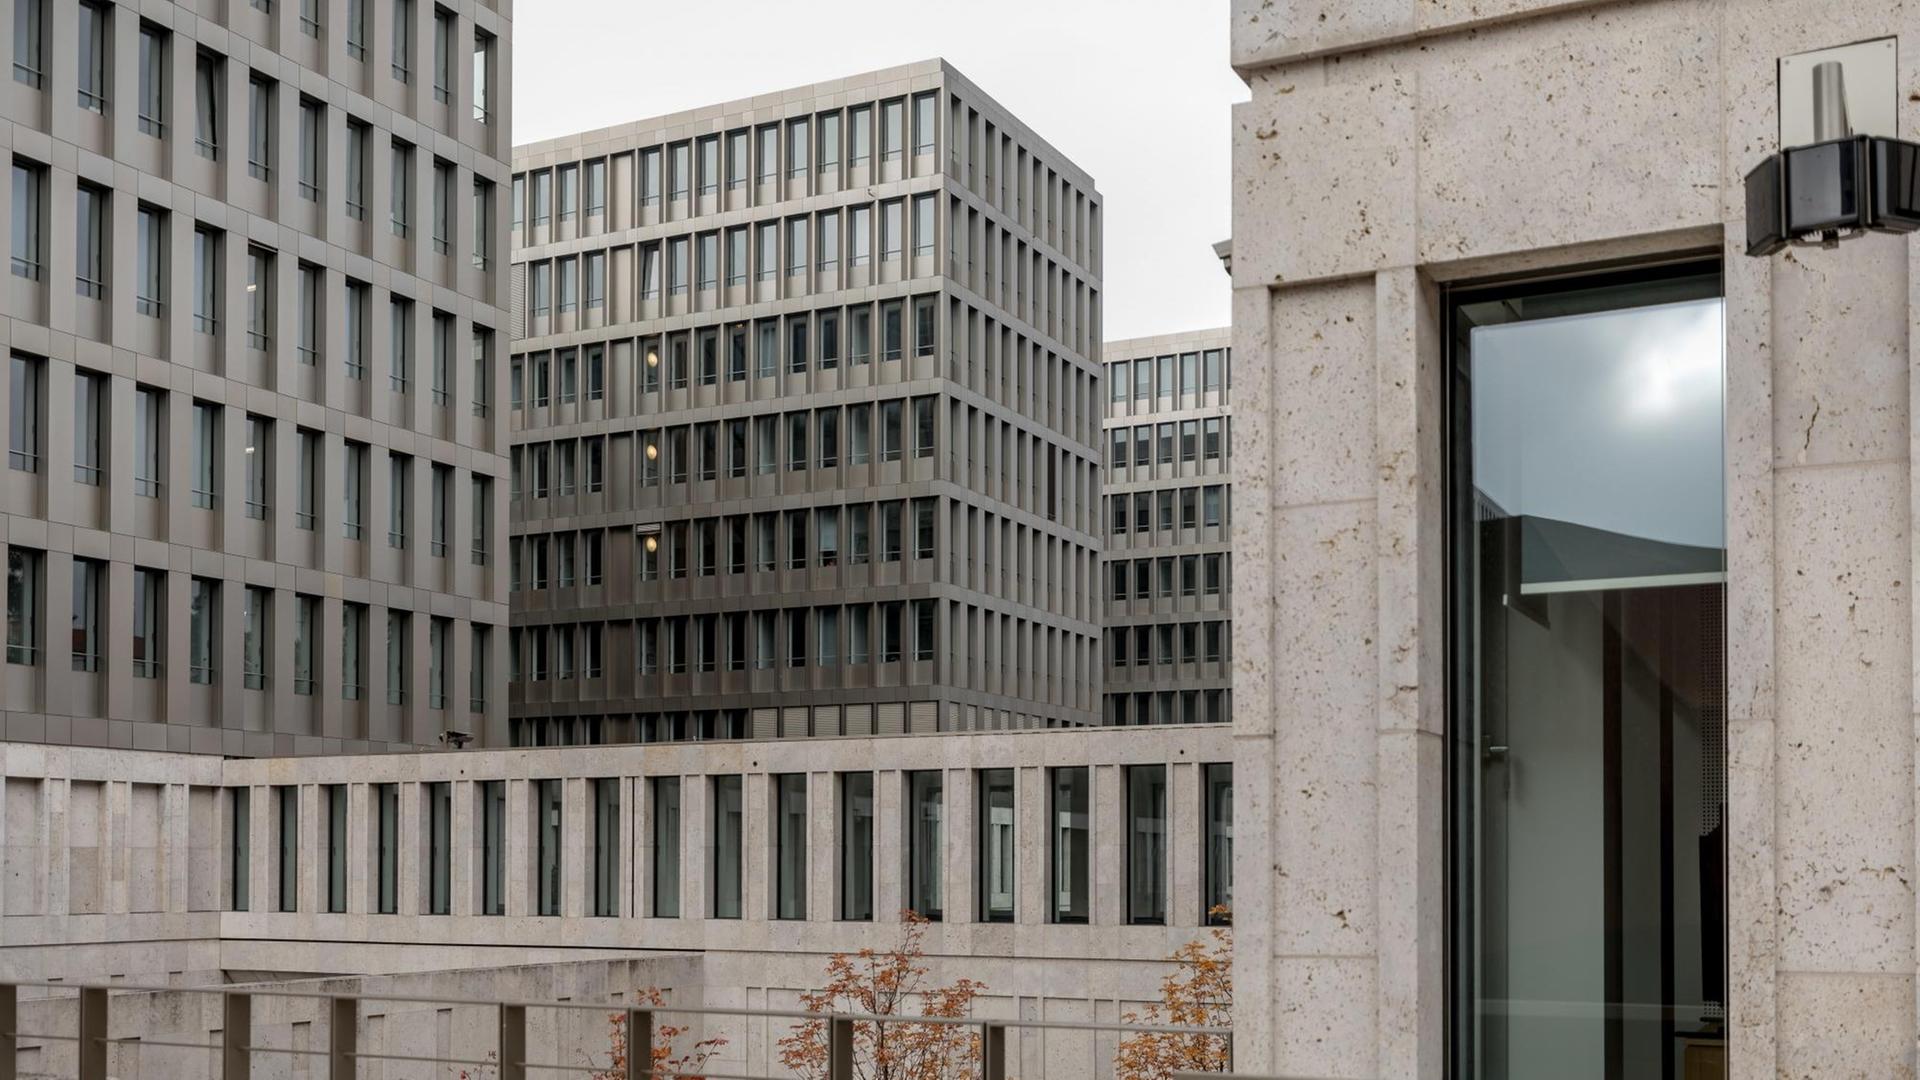 Das Gebäude des Bundesnachrichtendienst BND mit einer Betonfassade und vielen kleinen schmalen Fenstern.